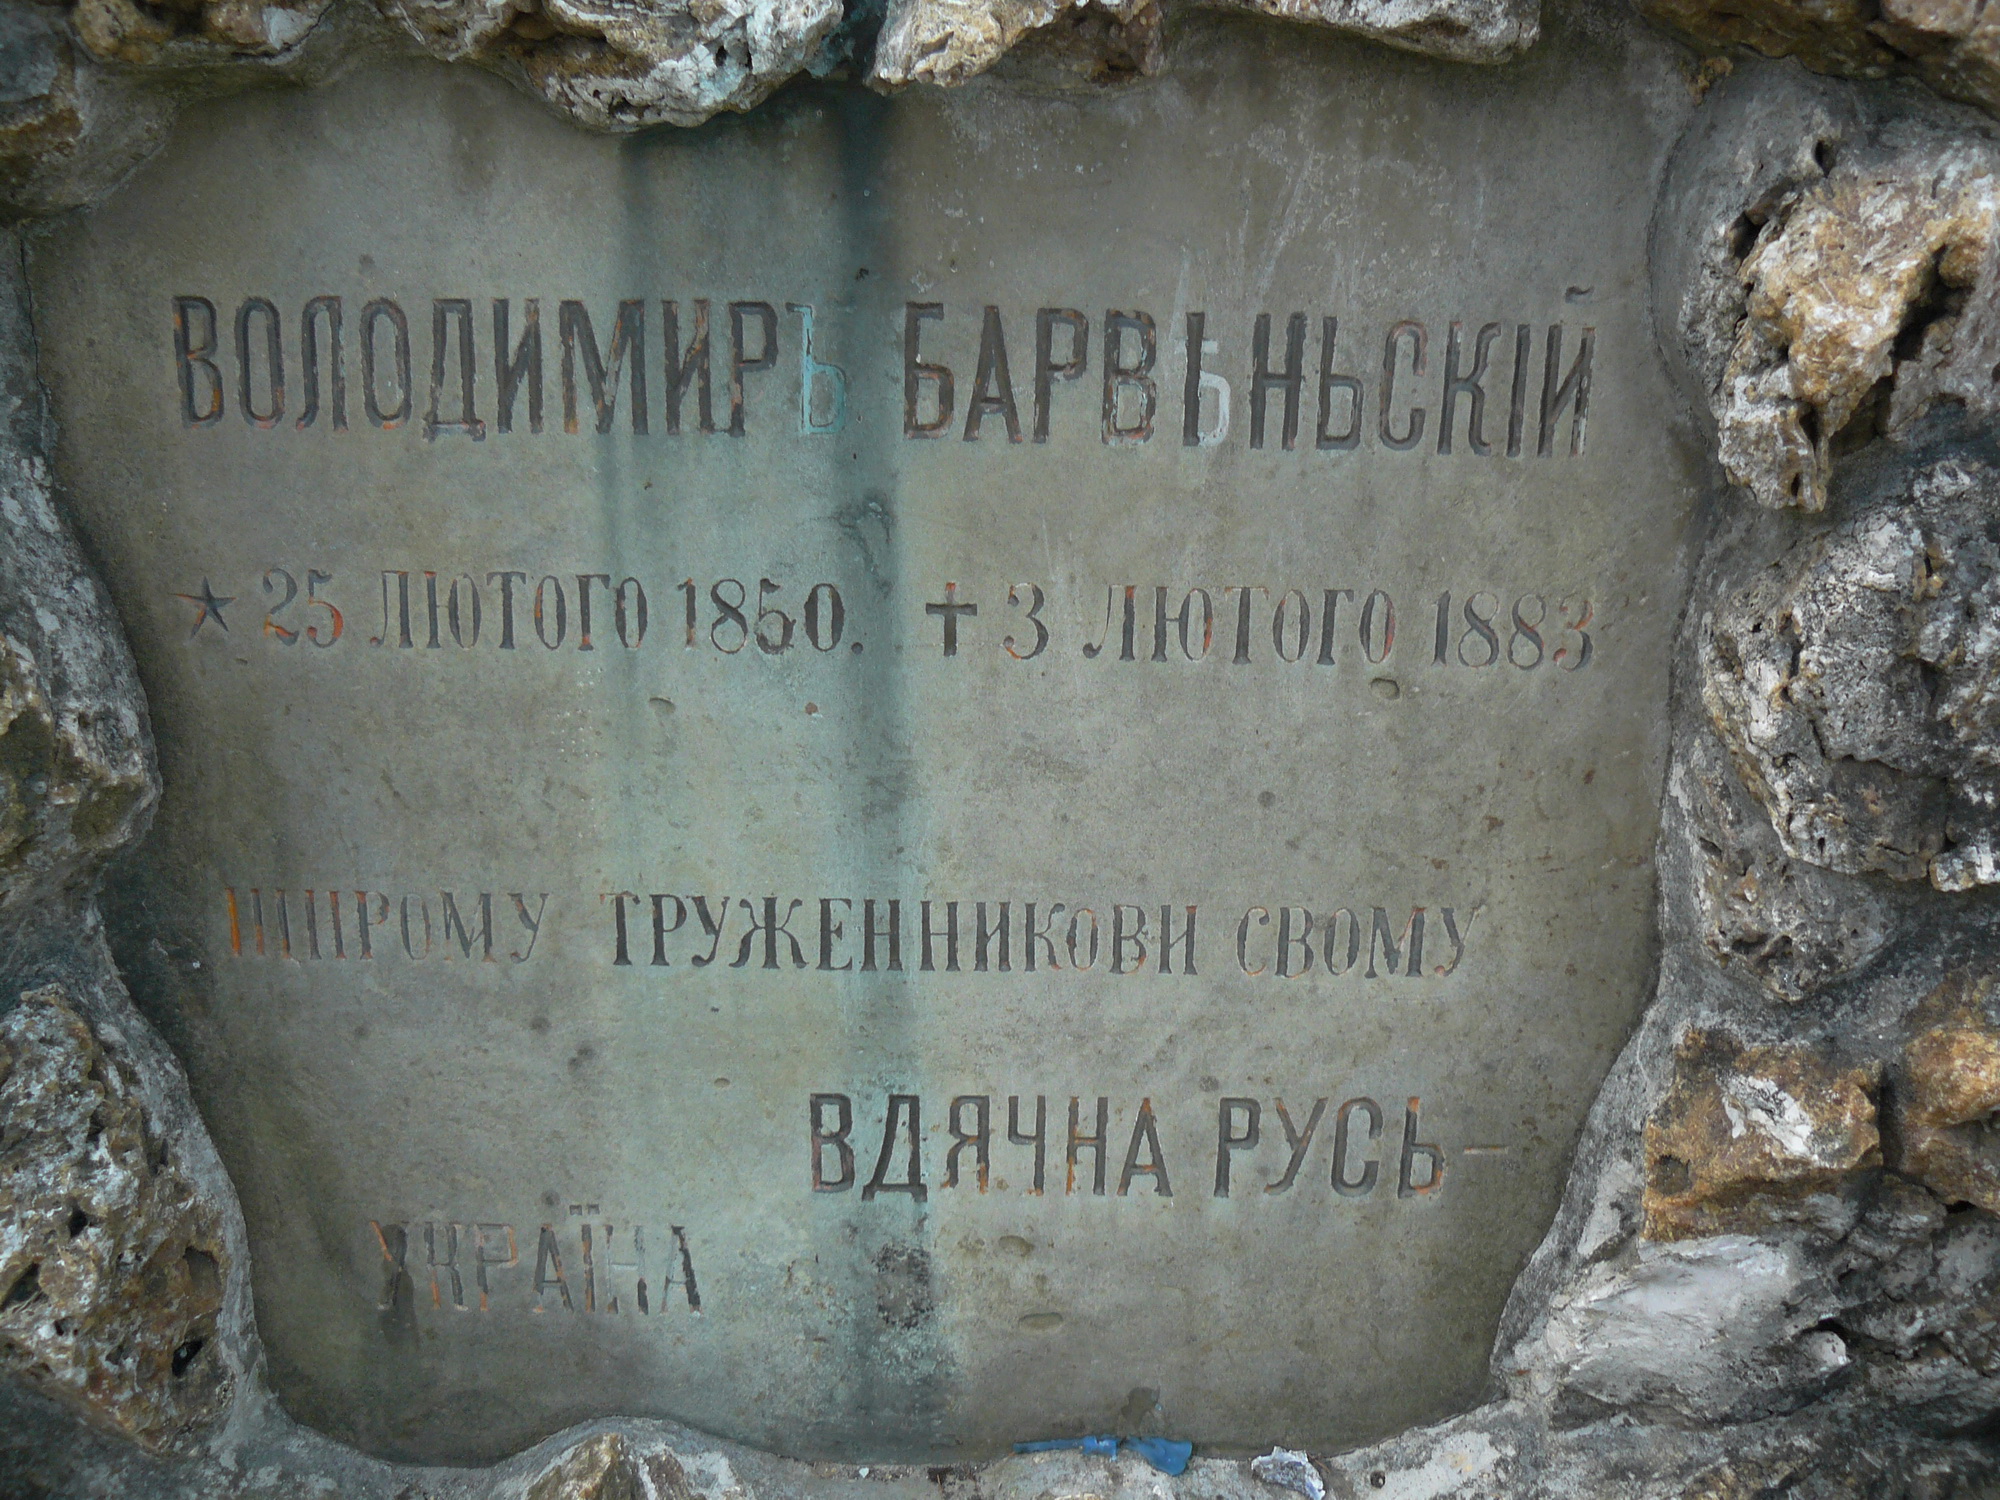   Фото № 11. Надгробие Володимира Барвинского   (для максимального увеличения нажмите квадратик со стрелкой).